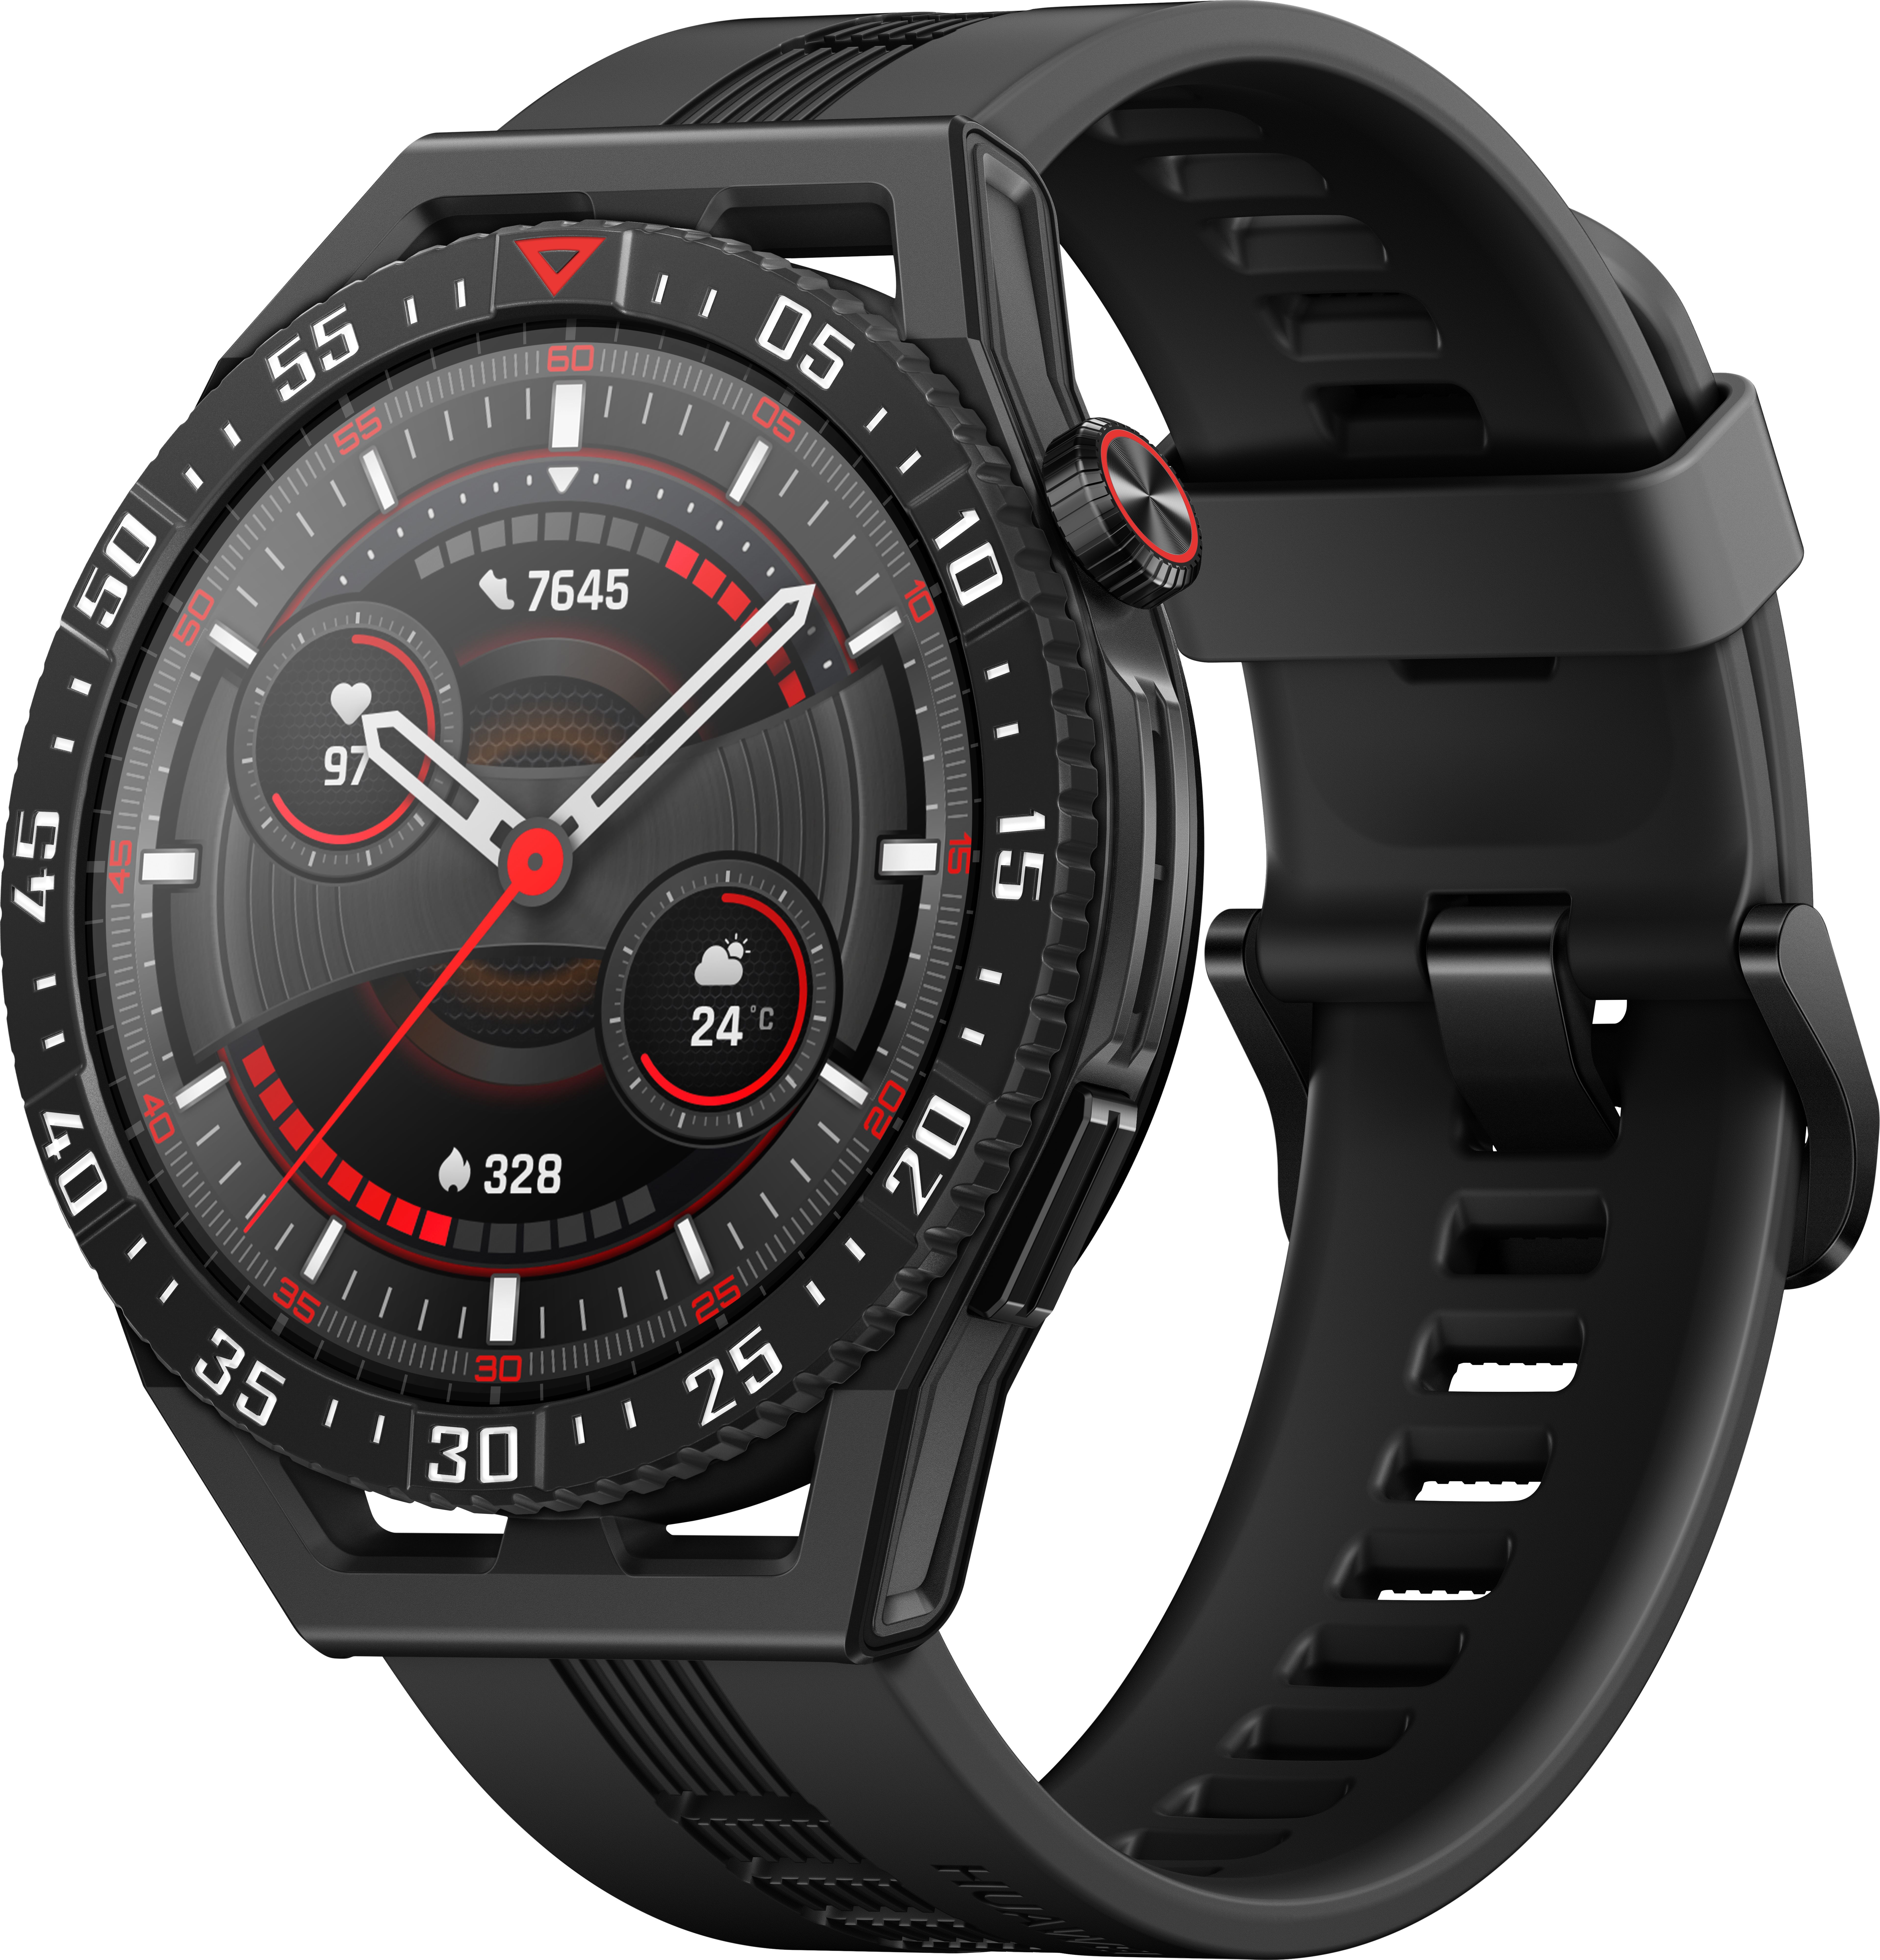 HUAWEI GT 3 SE Smart Watch - Black, Black